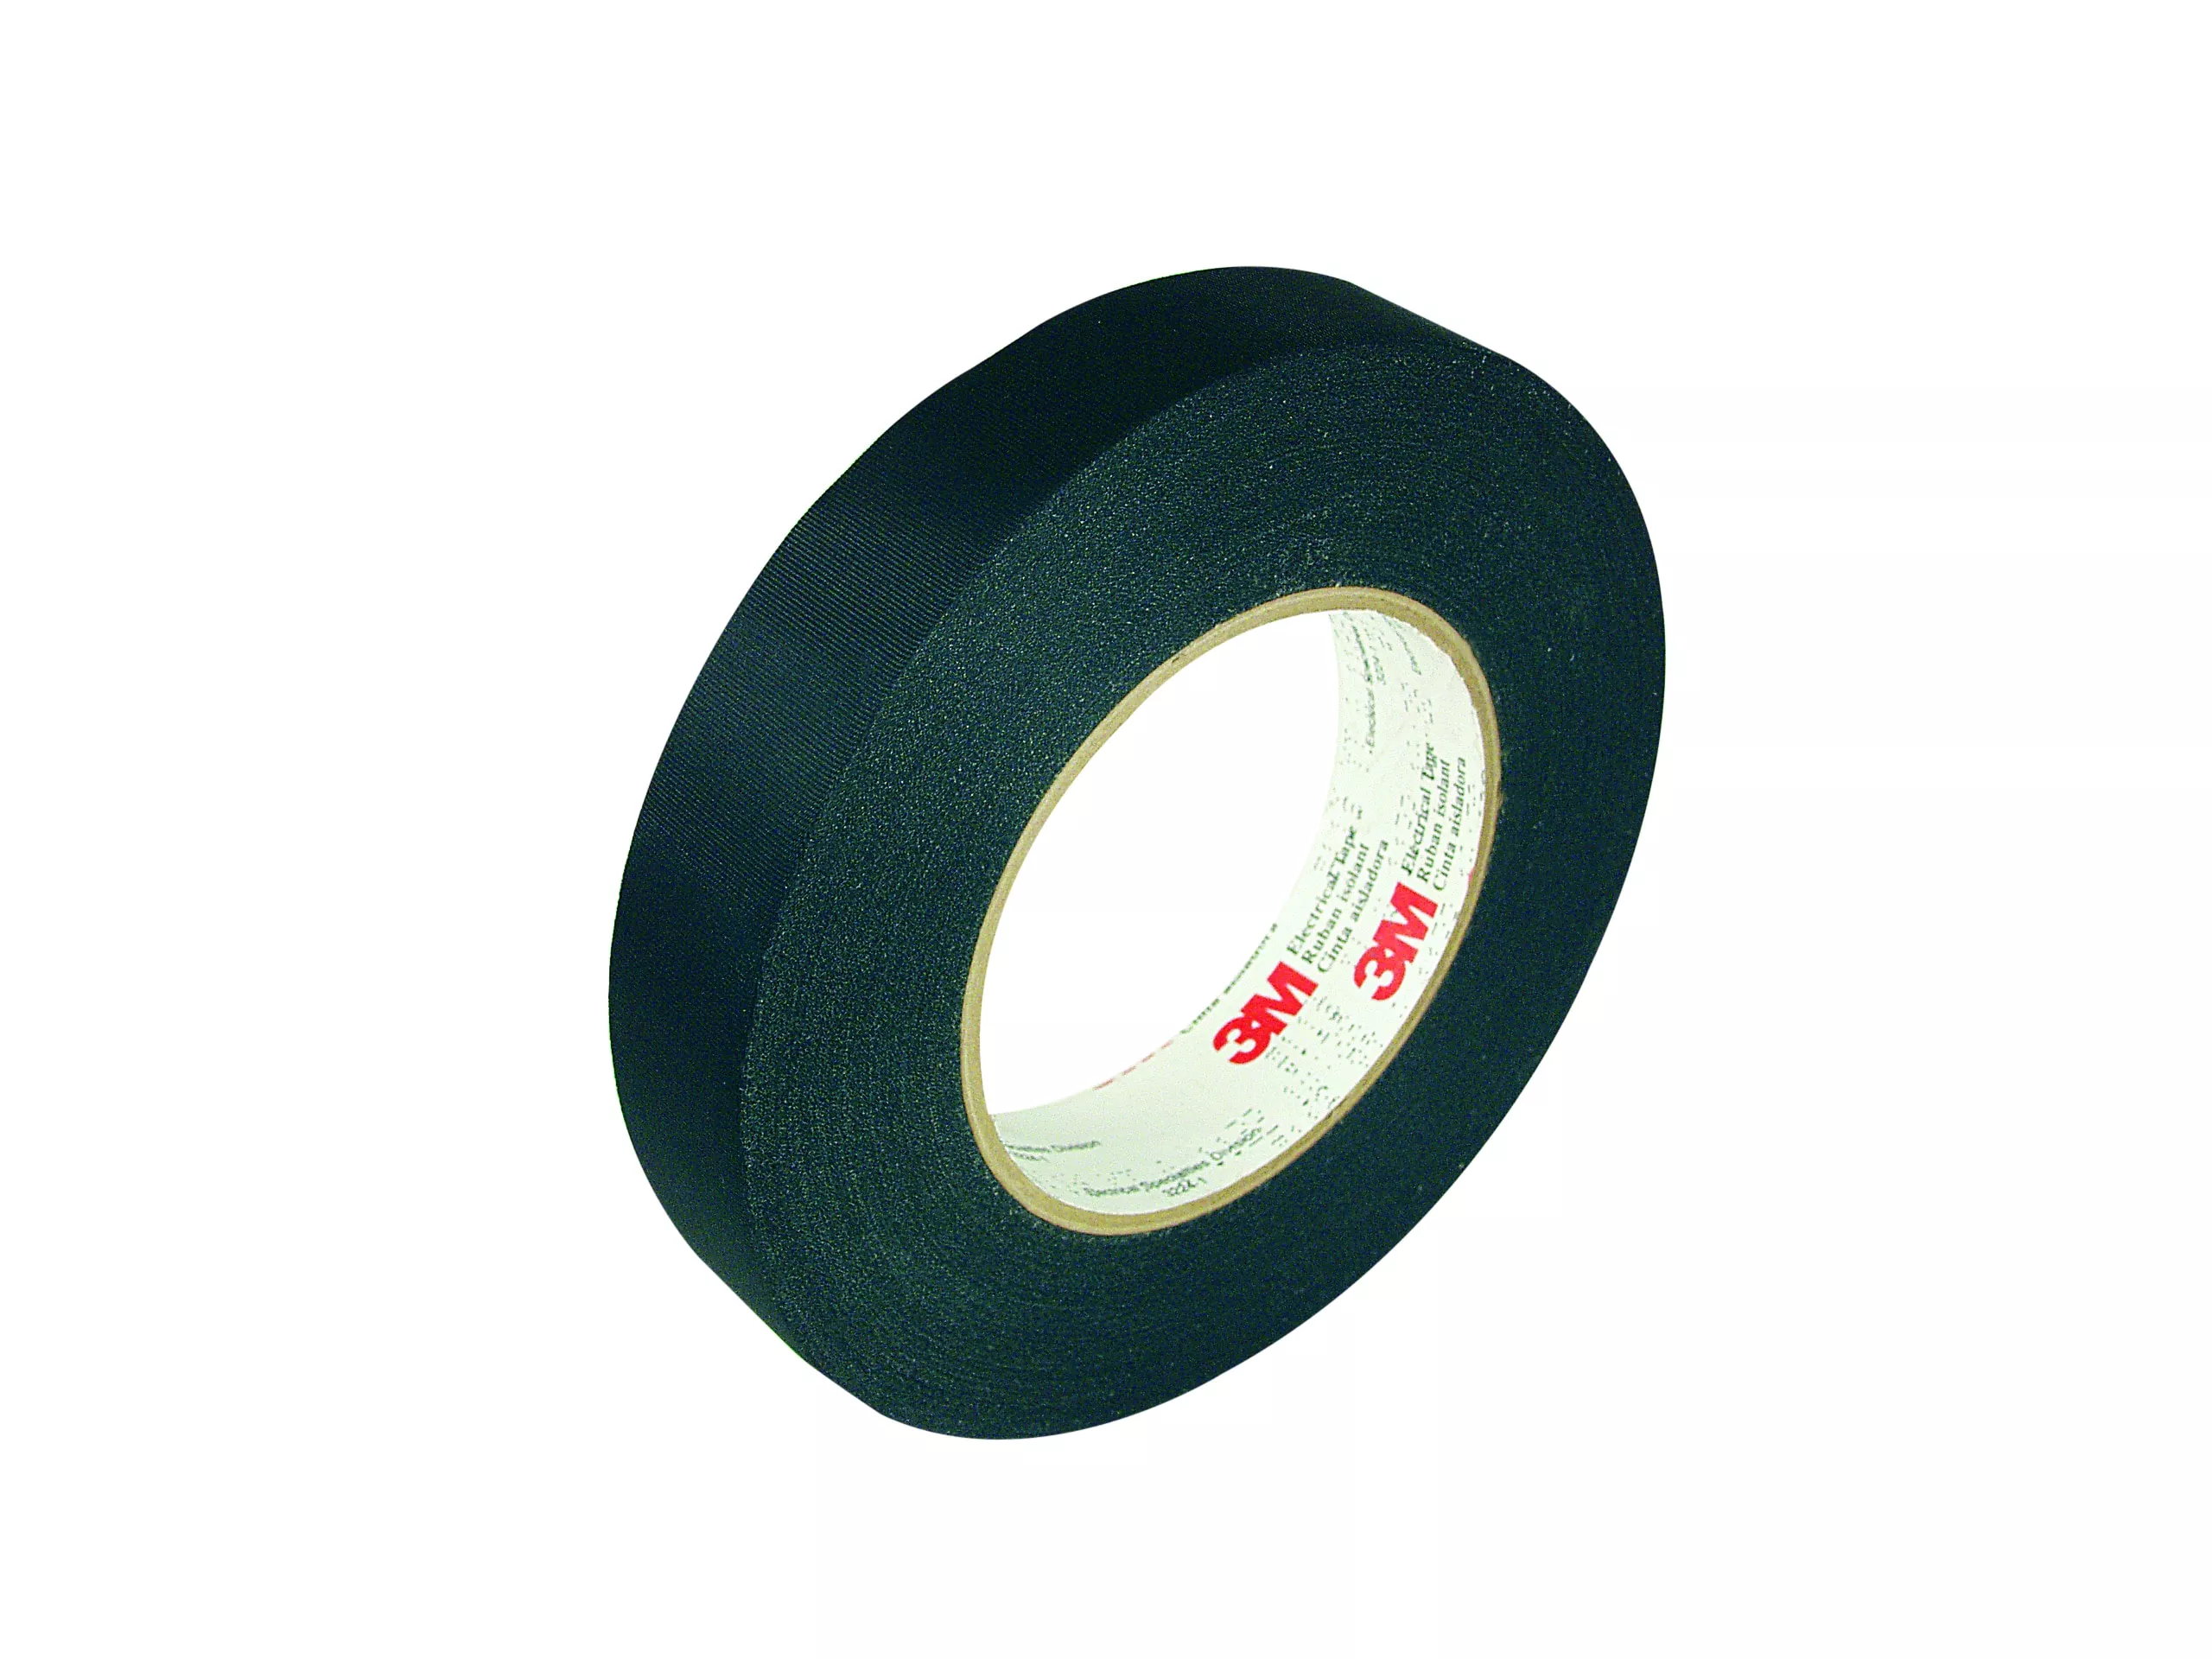 3M™ Acetate Cloth Electrical Tape 11, 1 in x 72 yd, 3 in Paper Core, 36
Rolls/Case